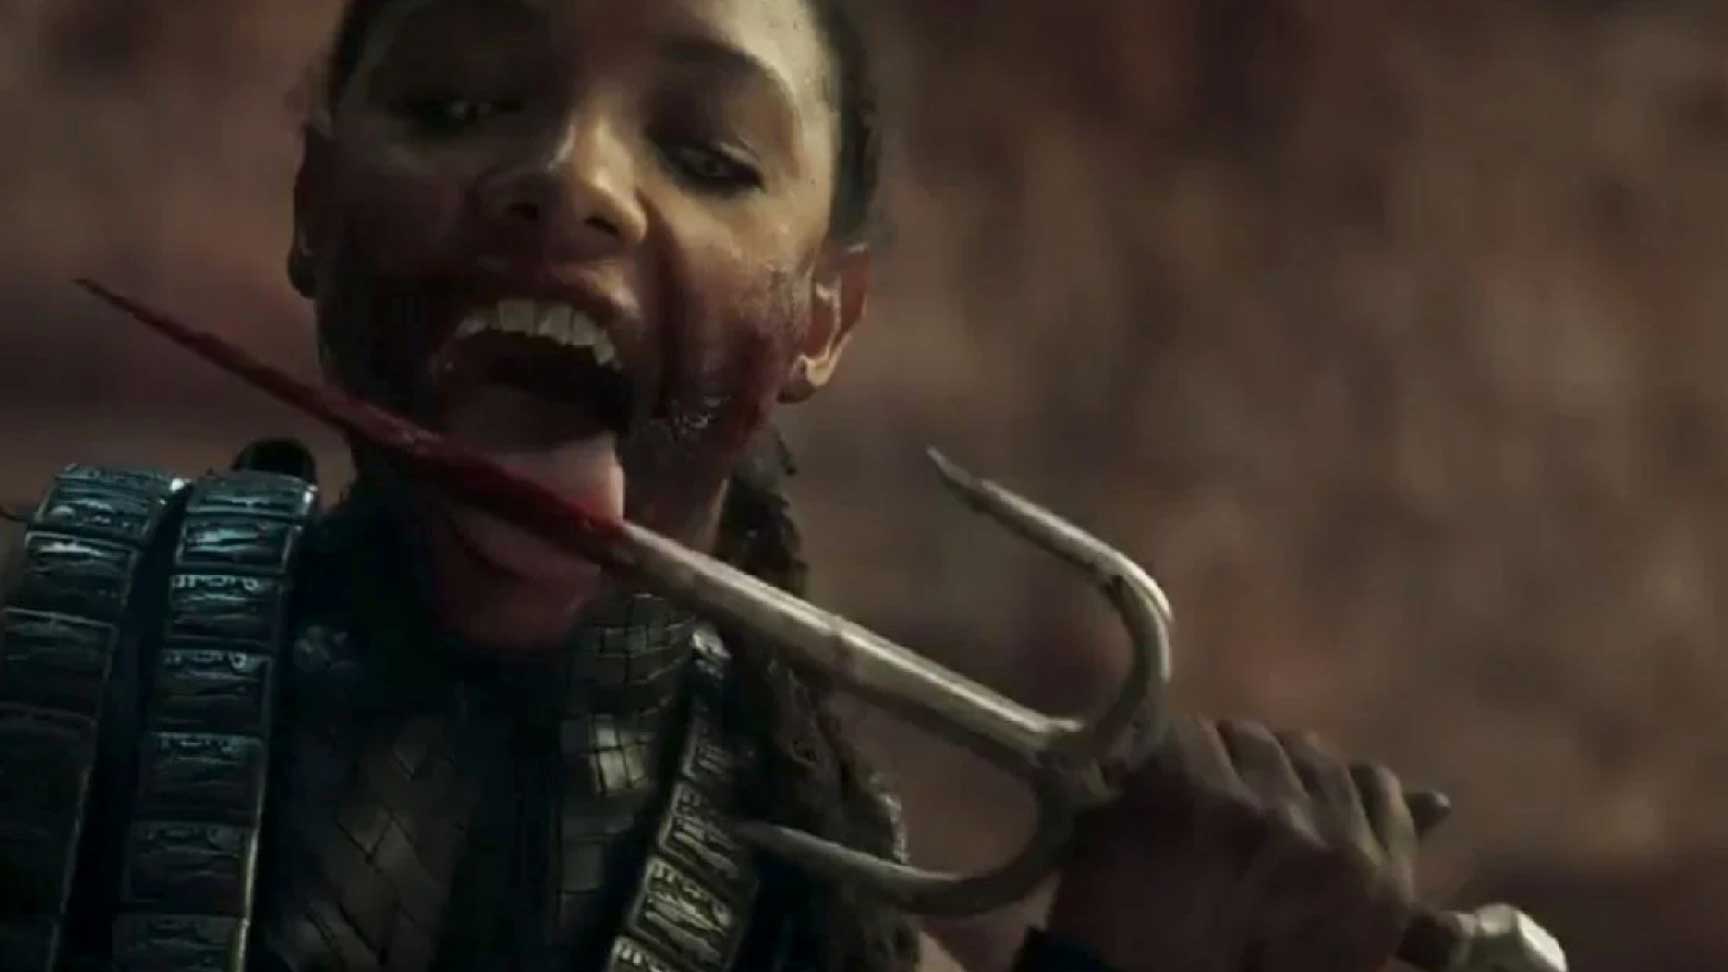 شخصیت ملینا با دندان های کریه مشغول لیسیدن خون از روی تیزی در فیلم Mortal Kombat با اقتباس از سری بازی مورتال کمبت